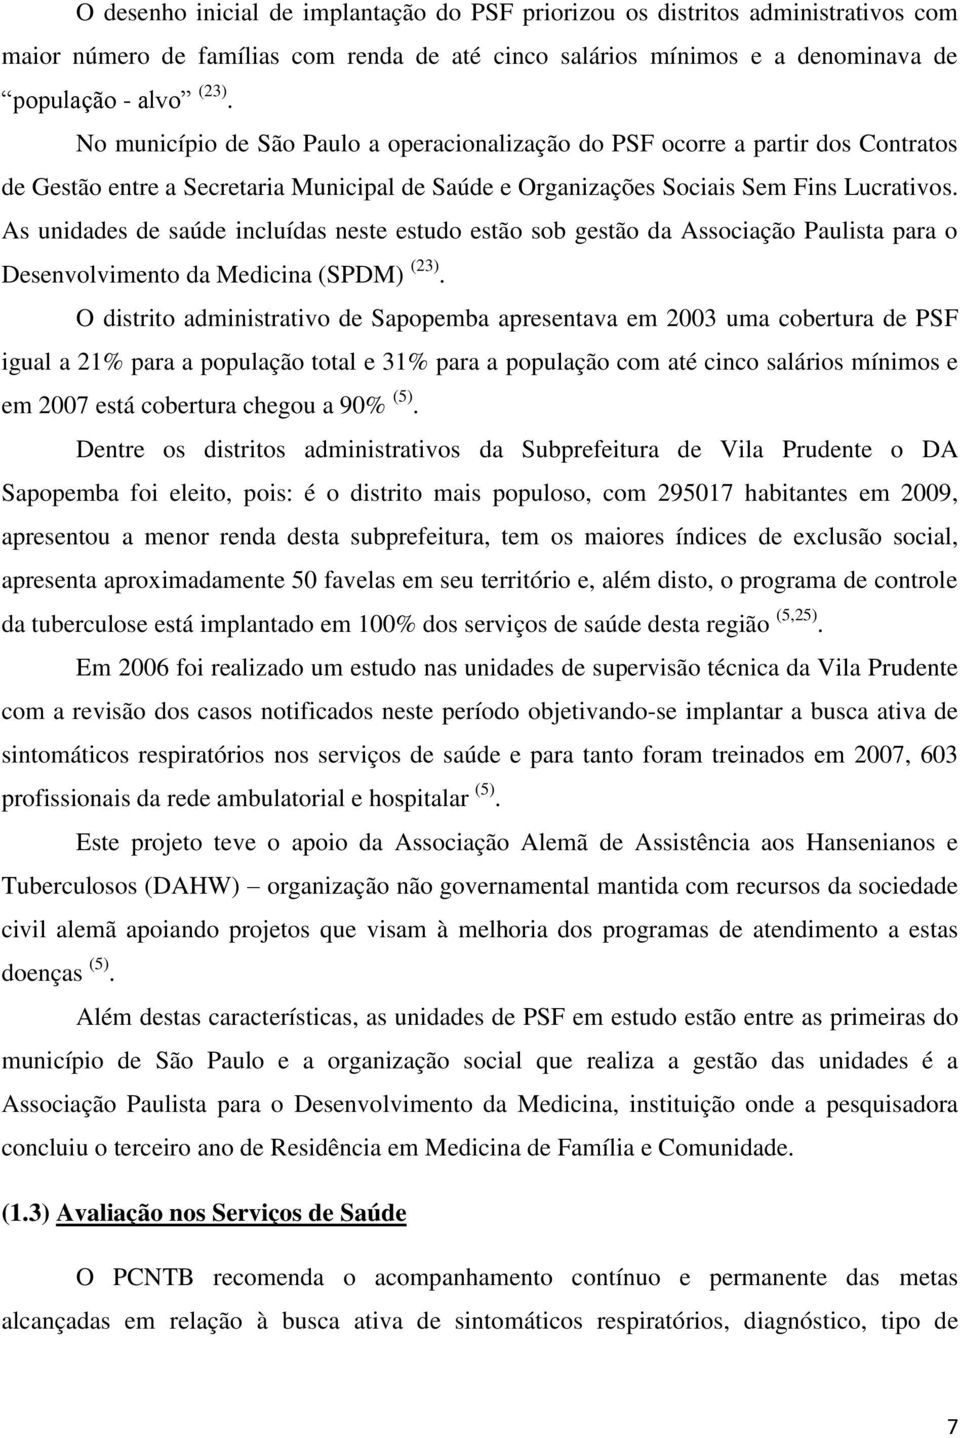 As unidades de saúde incluídas neste estudo estão sob gestão da Associação Paulista para o Desenvolvimento da Medicina (SPDM) (23).